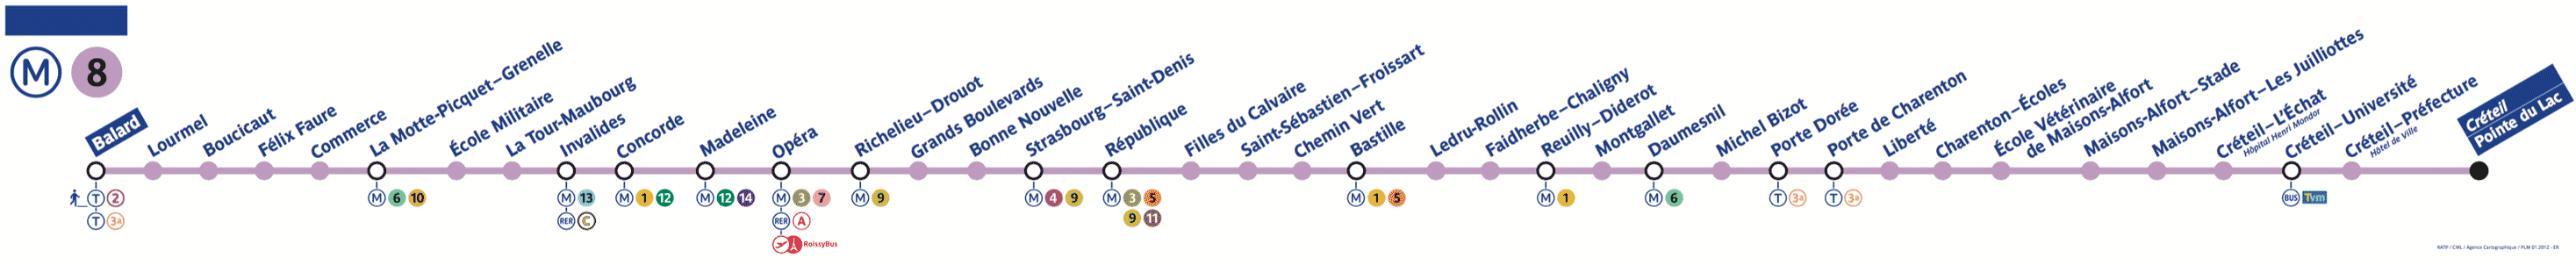 Paris Metro Line 8 Map